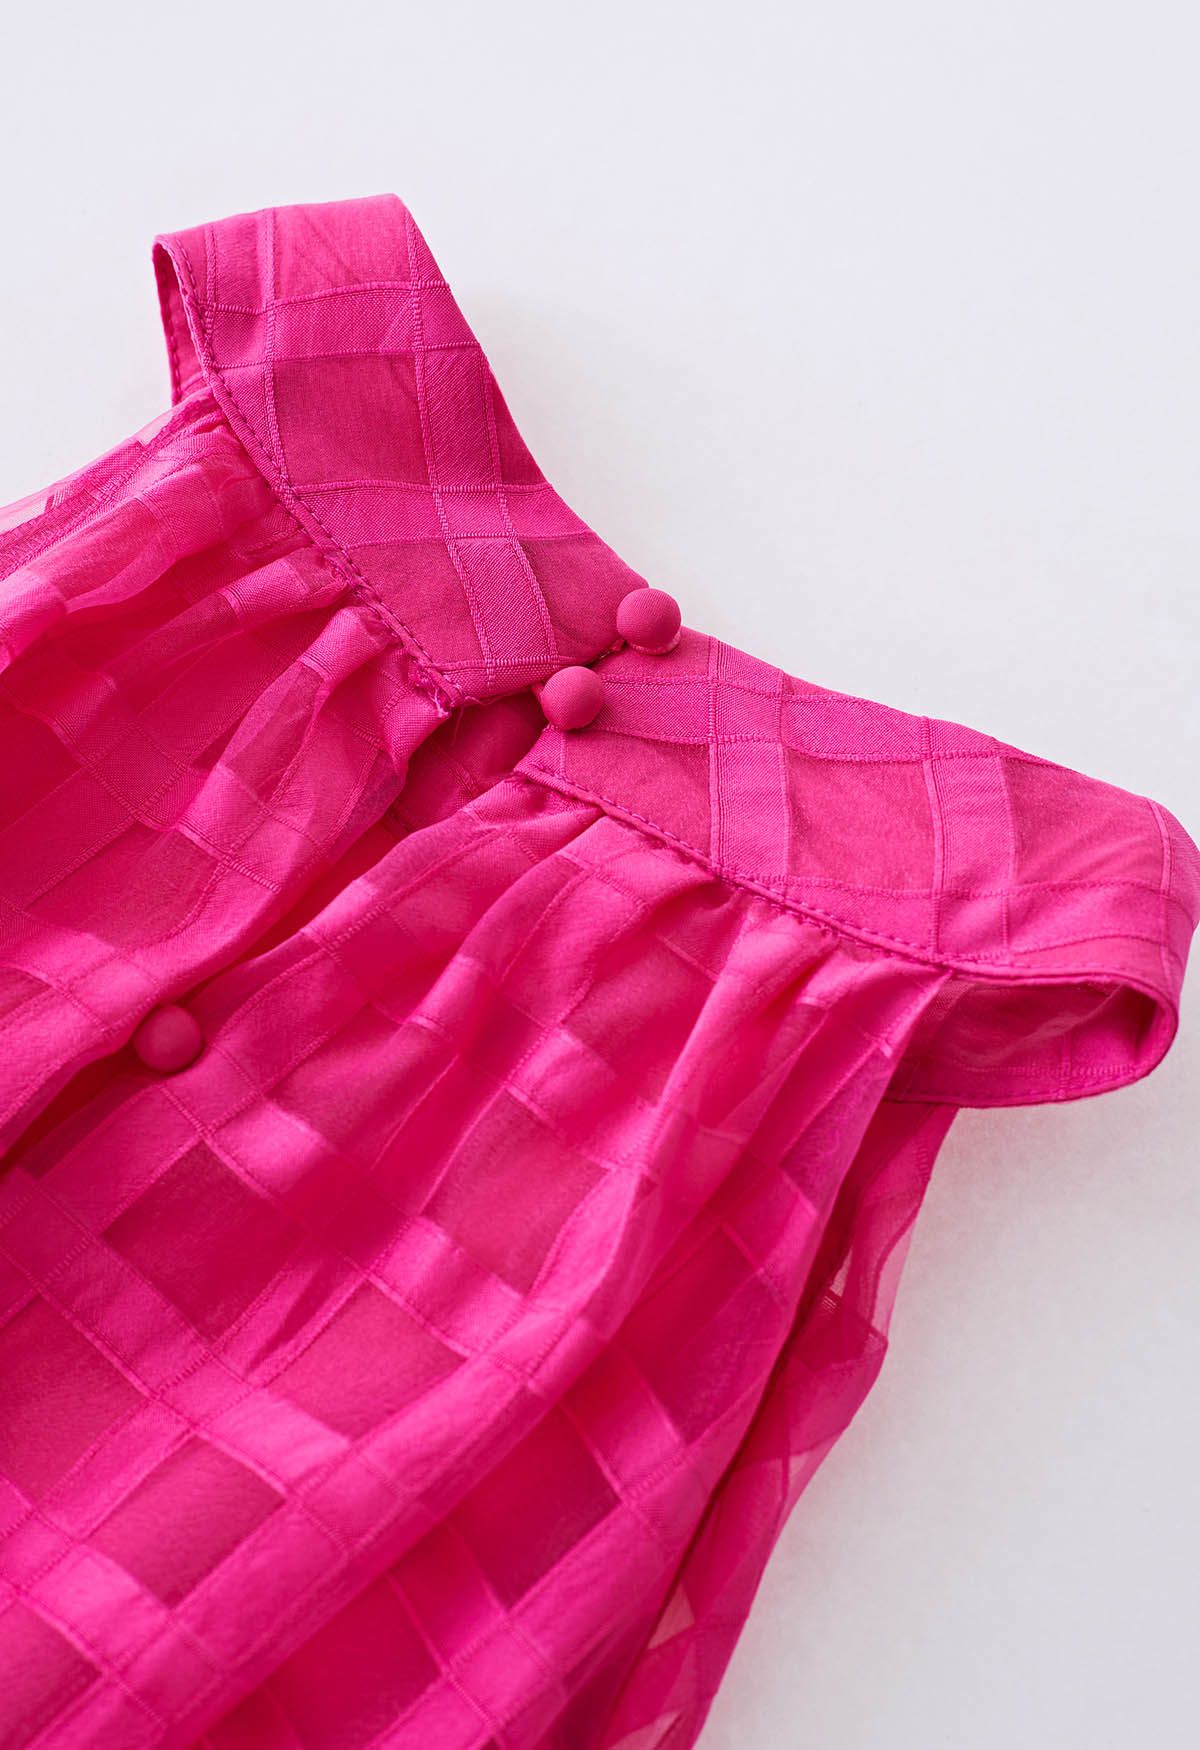 Check Halter Neck Tie Waist Maxi Dress in Hot Pink